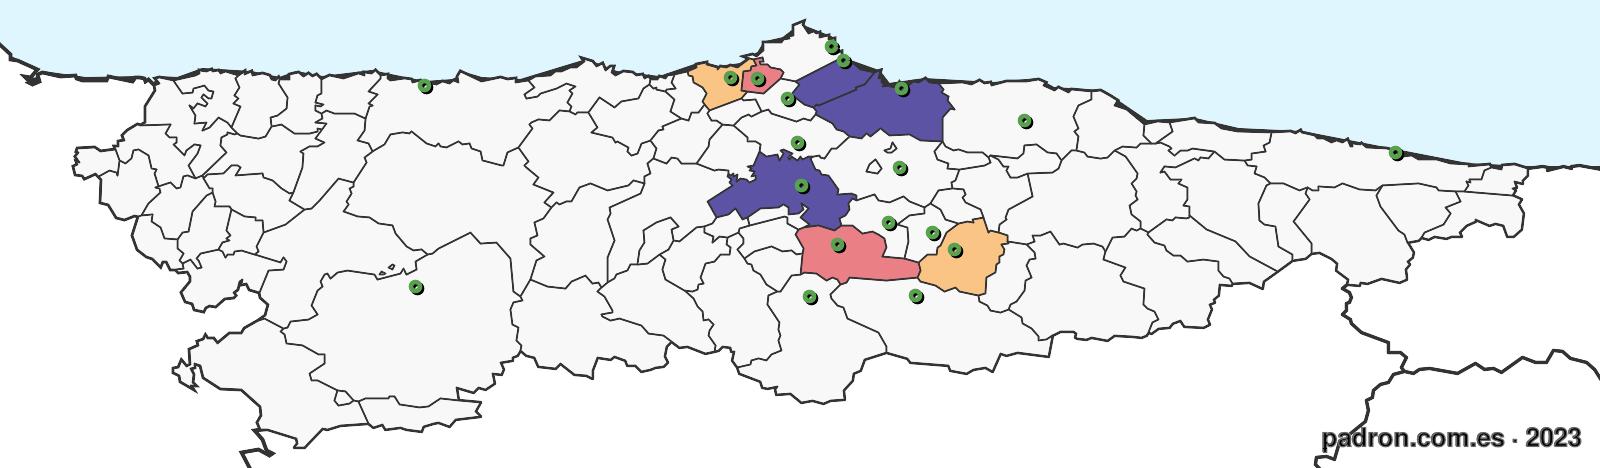 eslovacos en asturias.